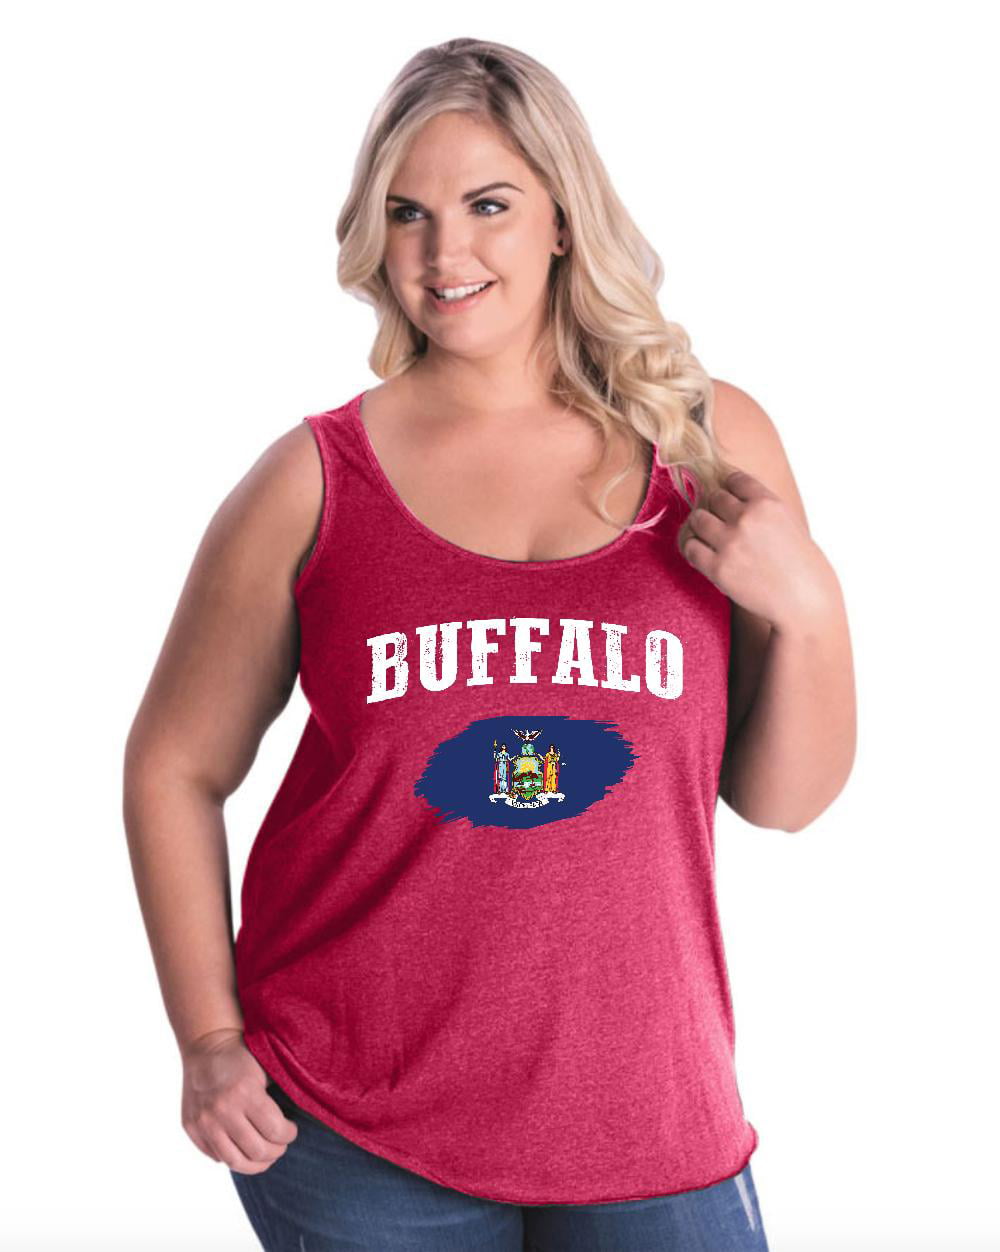 buffalo bills women's tank top